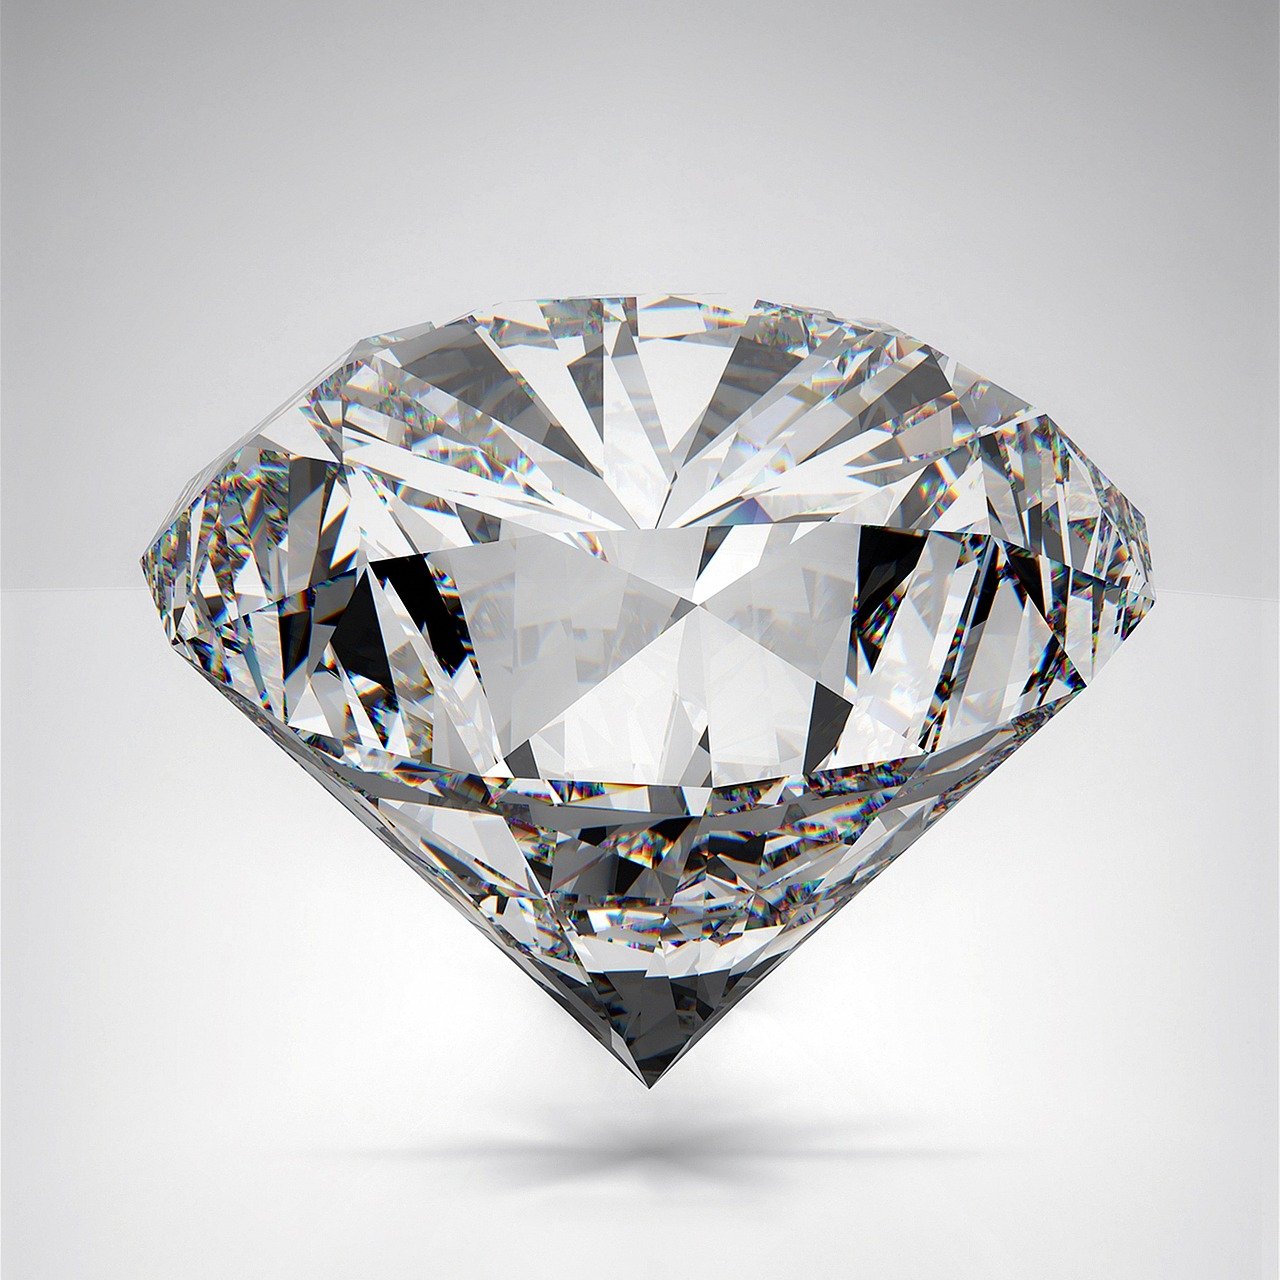 ¿Por qué los diamantes son tan costosos?